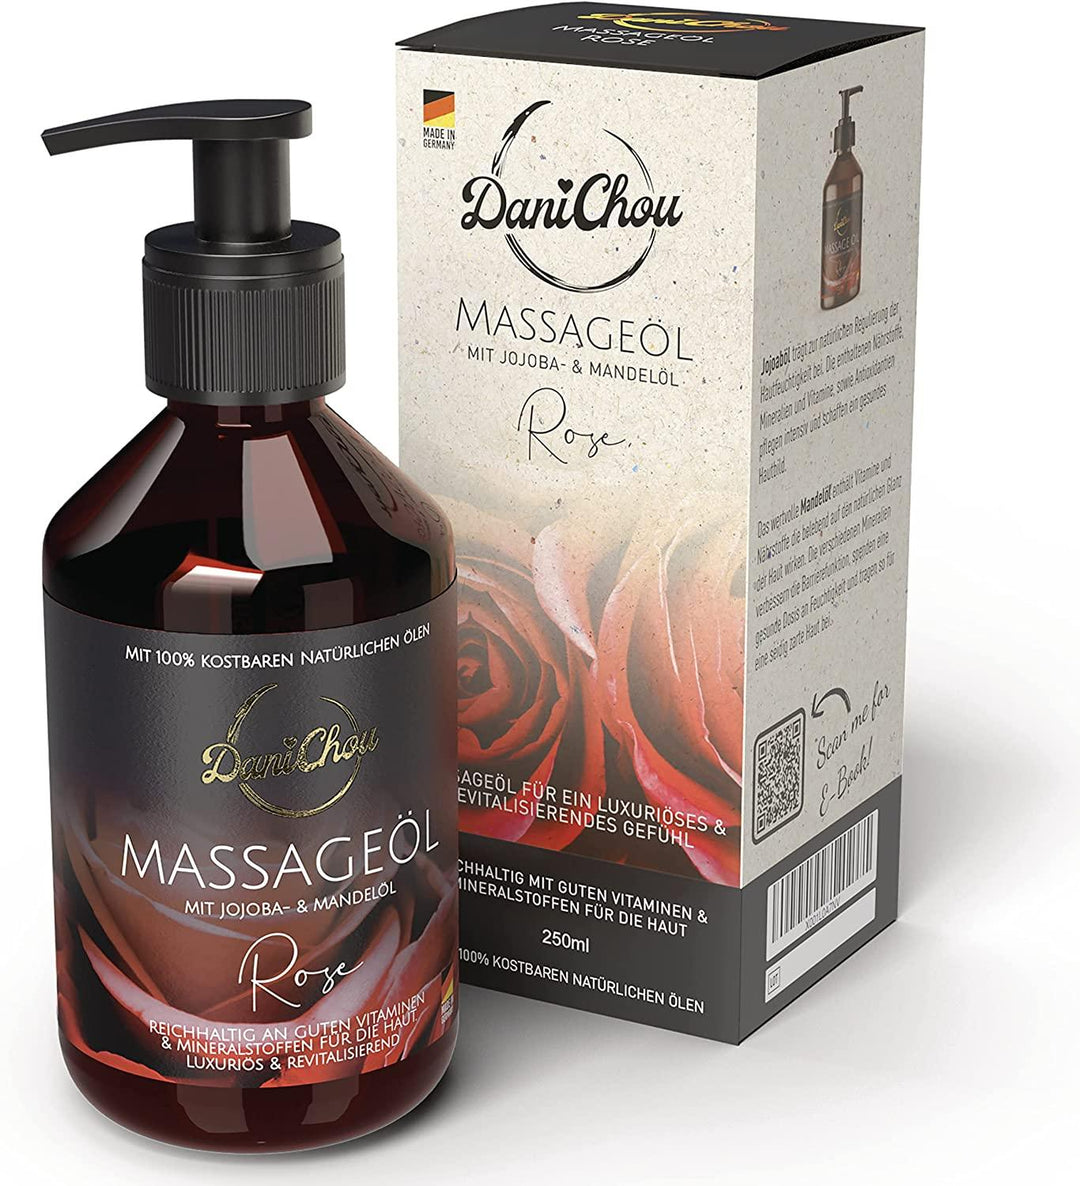 Massageöl Rose, 250ml mit Jojobaöl & Mandelöl, 100 % Naturkosmetik - DaniChou-Store